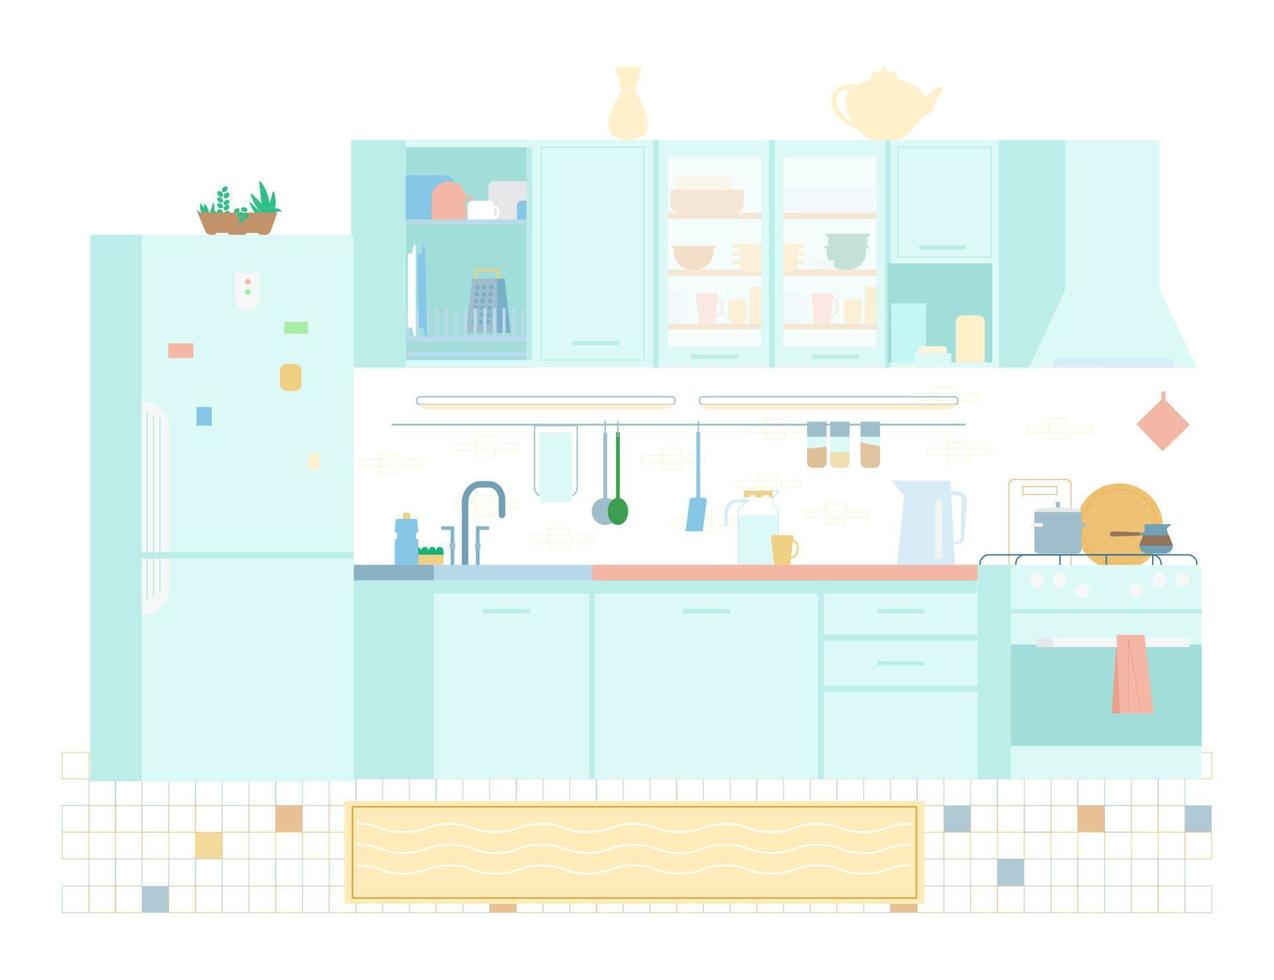 interior de cocina en colores pastel ilustración vectorial plana. muebles, cocina, utensilios, frigorífico, estanterías, fregadero, escurreplatos. vector